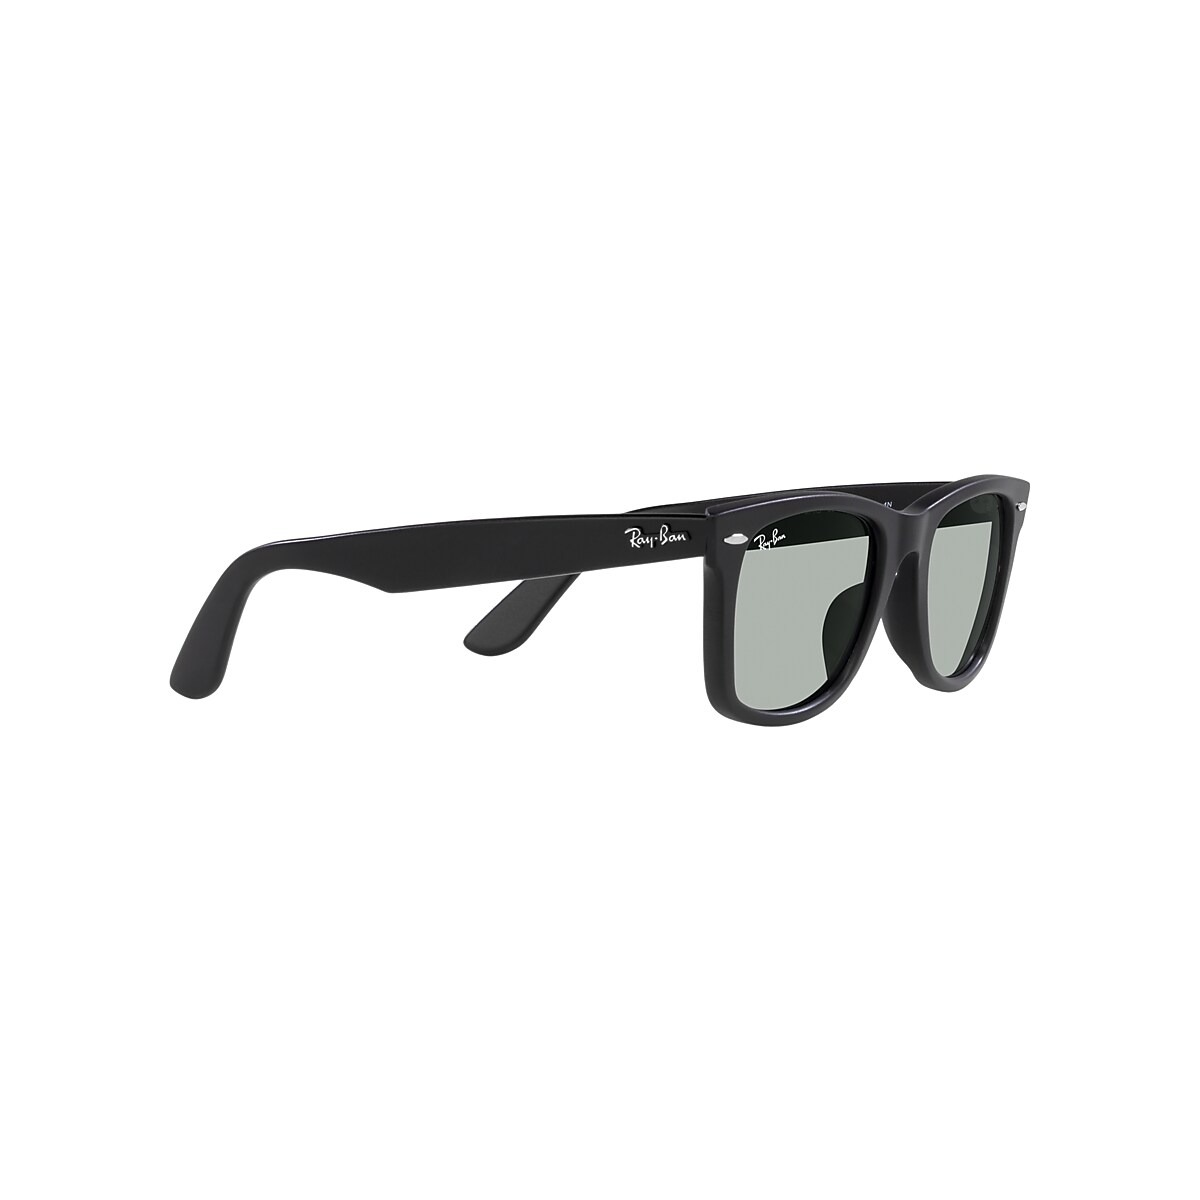 ORIGINAL WAYFARER WASHED LENSES Sunglasses in Black and Light Grey 